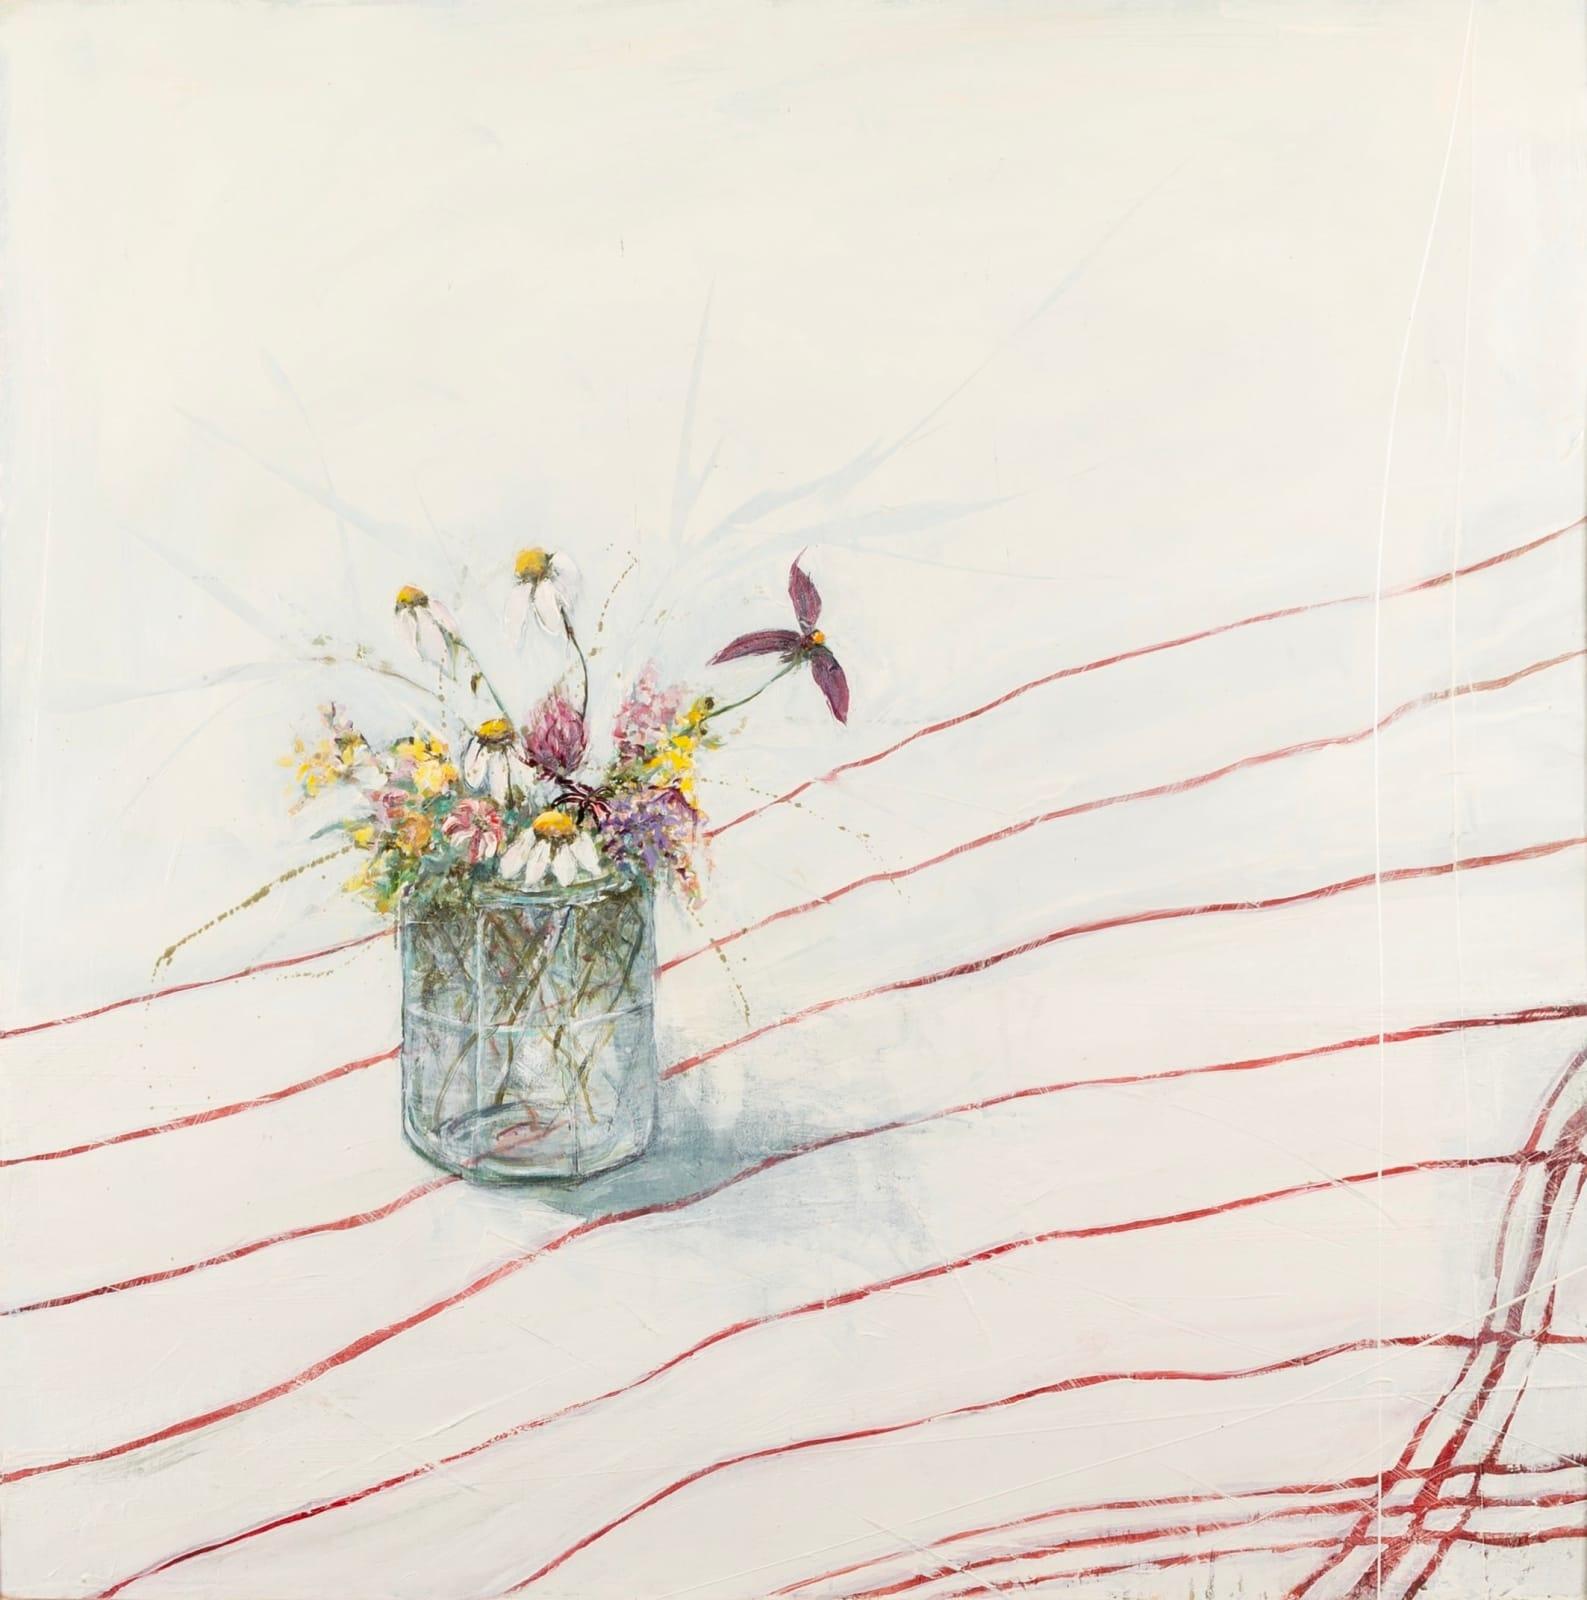 Wild Thing Gemälde von Jane Skingley B. 1963

Zusätzliche Informationen:
Medium: Öl auf Karton
Abmessungen: 60 x 60 cm
23 5/8 x 23 5/8 Zoll

Jane Skingley malt Seestücke und Landschaften in Öl. Ihre erste Ausstellung war ein riesiger Erfolg, und